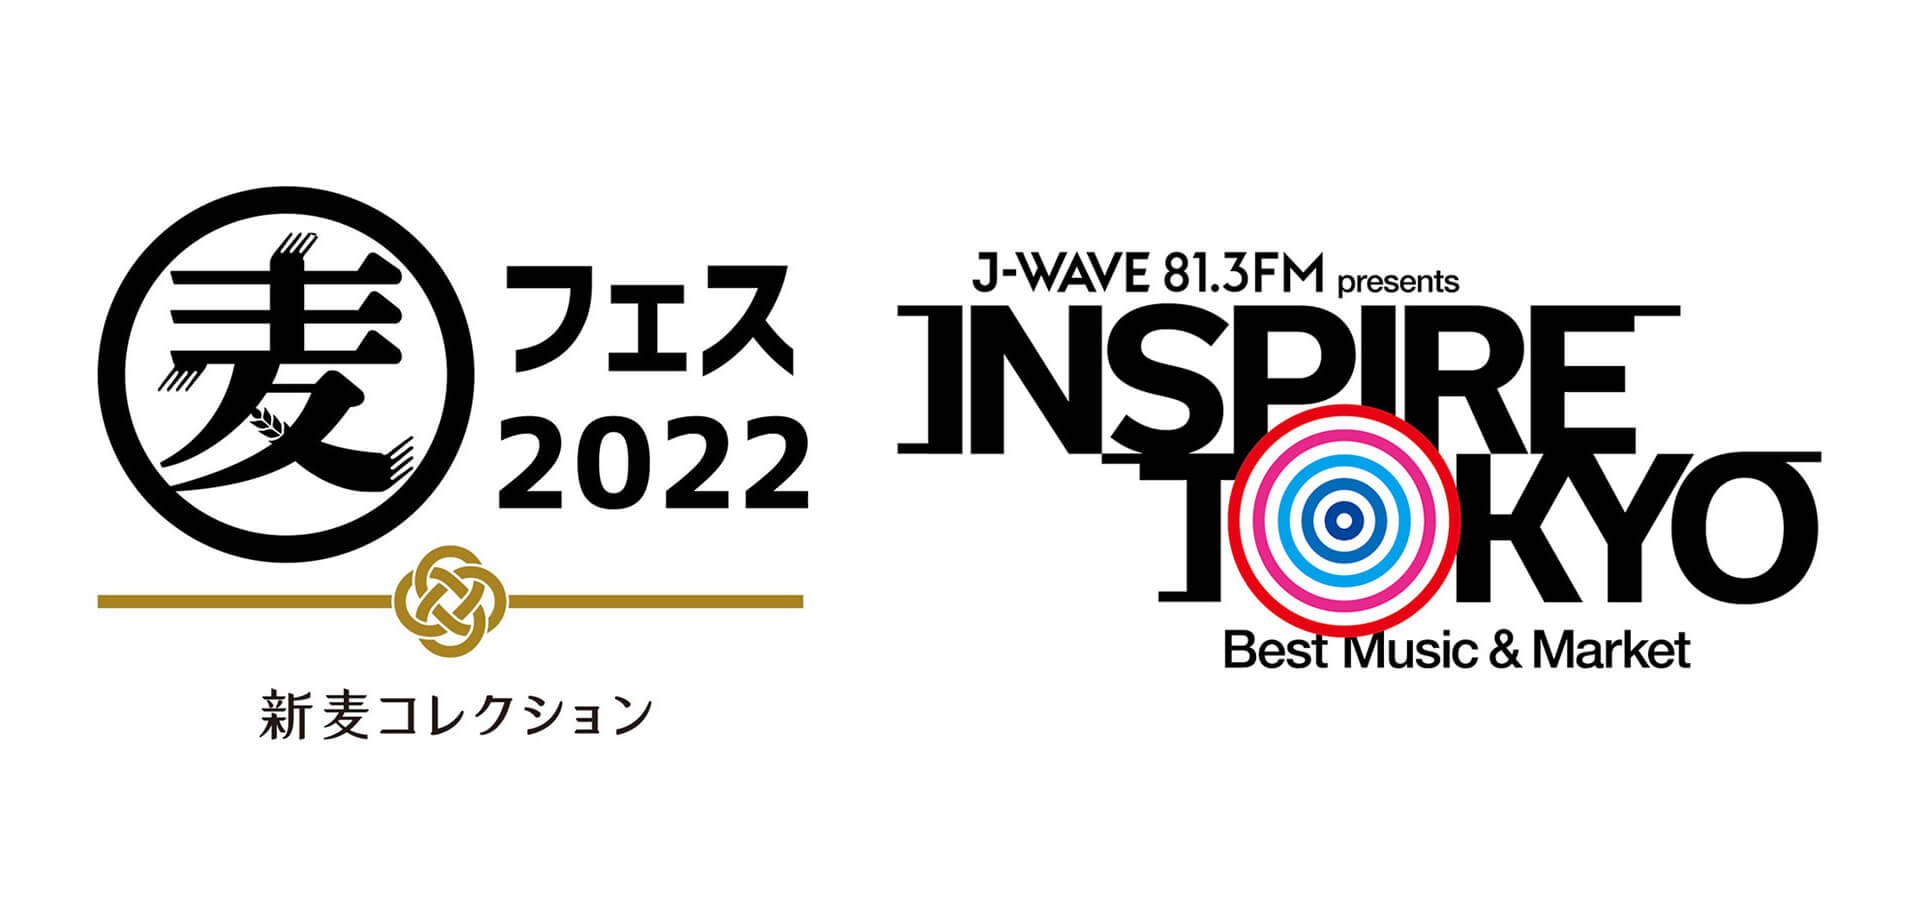 「麦フェス」 都市フェス「INSPIRE TOKYO」